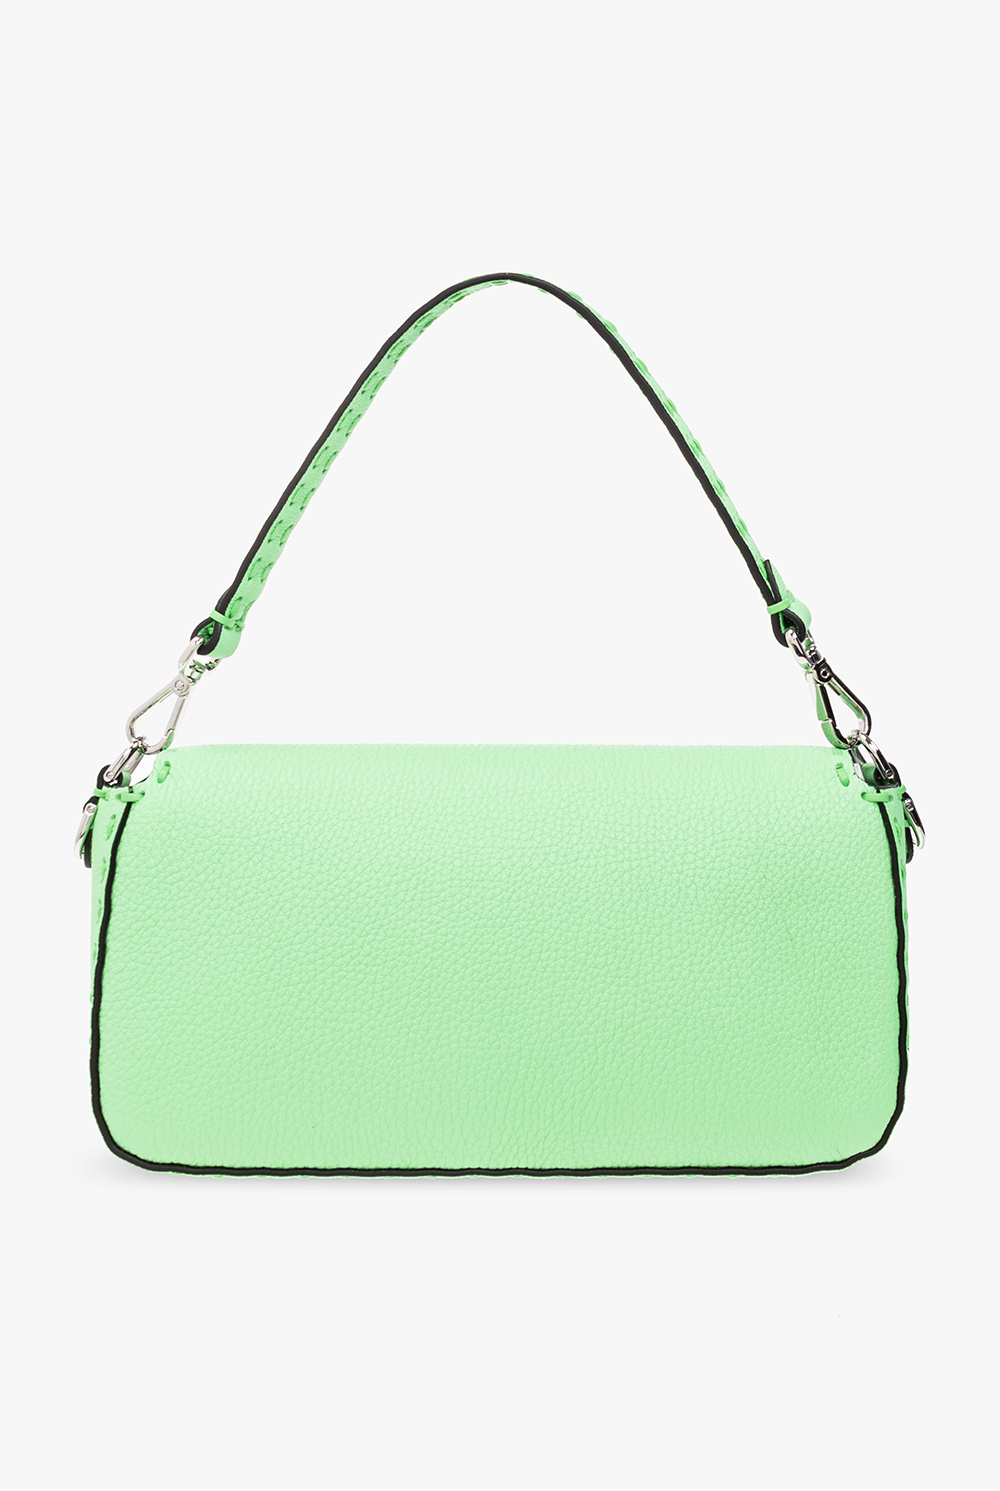 Fendi ‘Baguette‘ shoulder bag